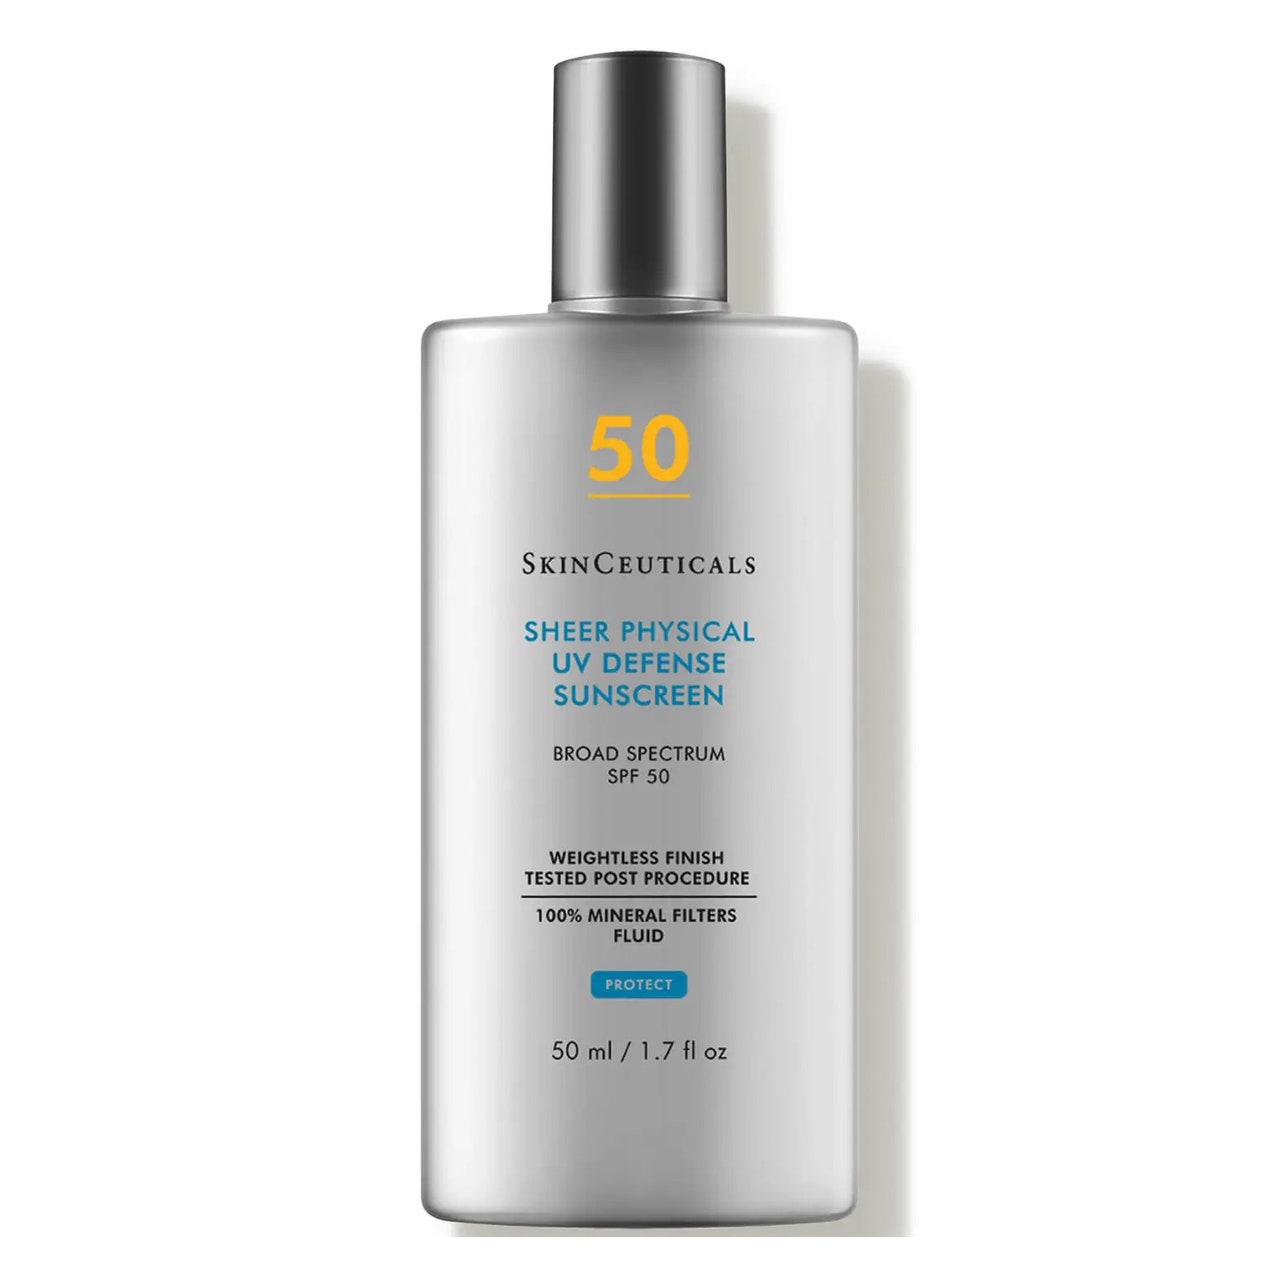 Flache graue rechteckige Flasche von SkinCeuticals Sheer Physical UV Defense SPF 50 auf weißem Hintergrund